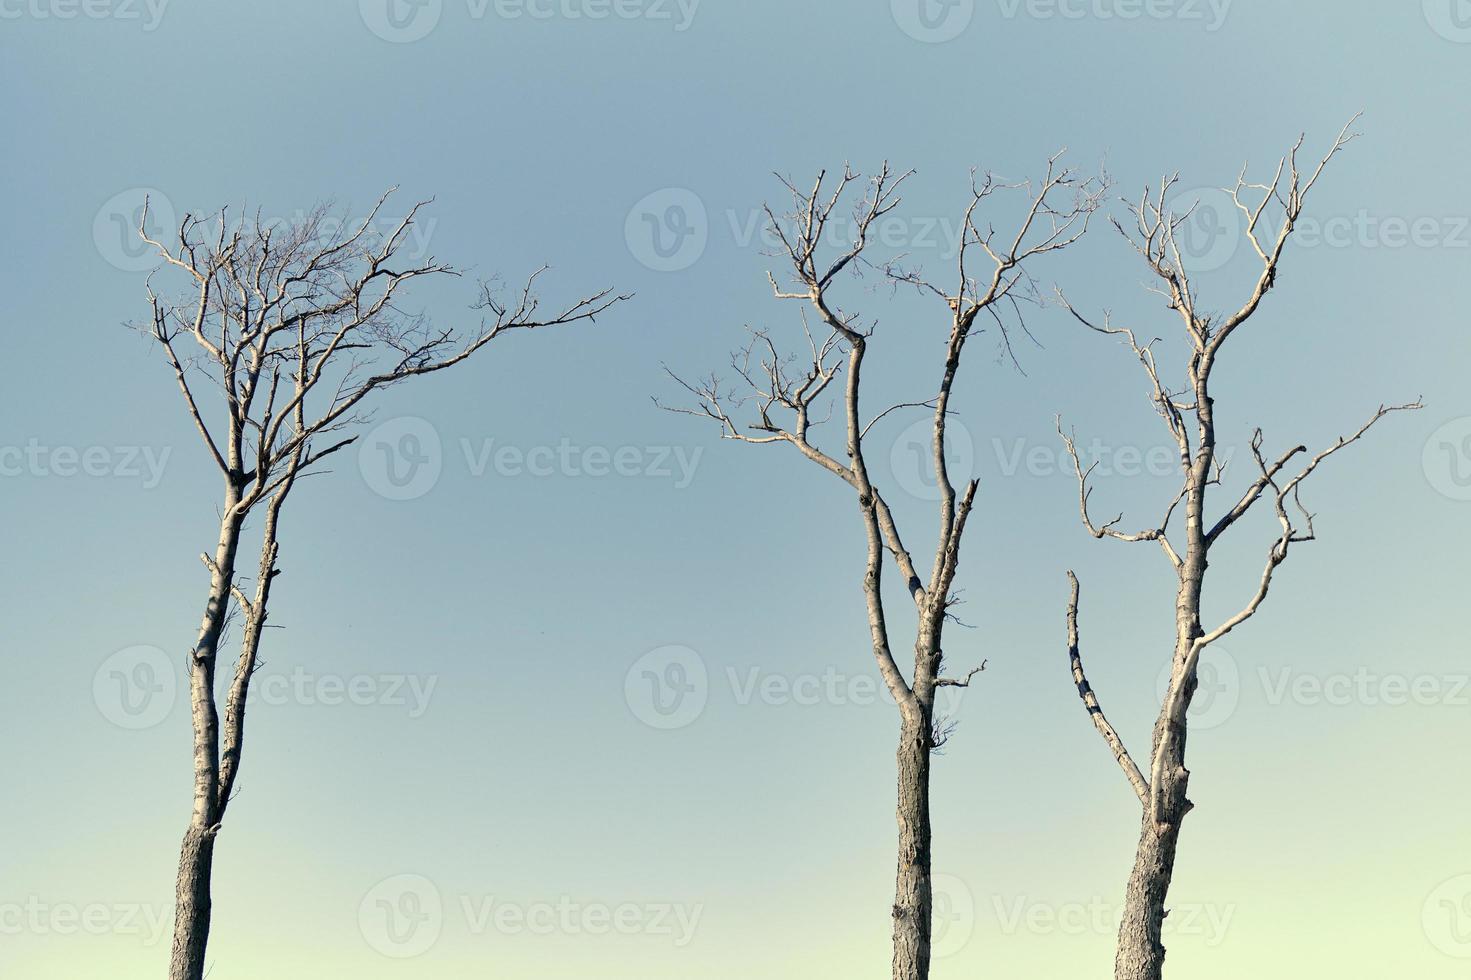 hermosas ramas desnudas de árboles muertos contra el fondo del cielo azul brillante, de cerca foto